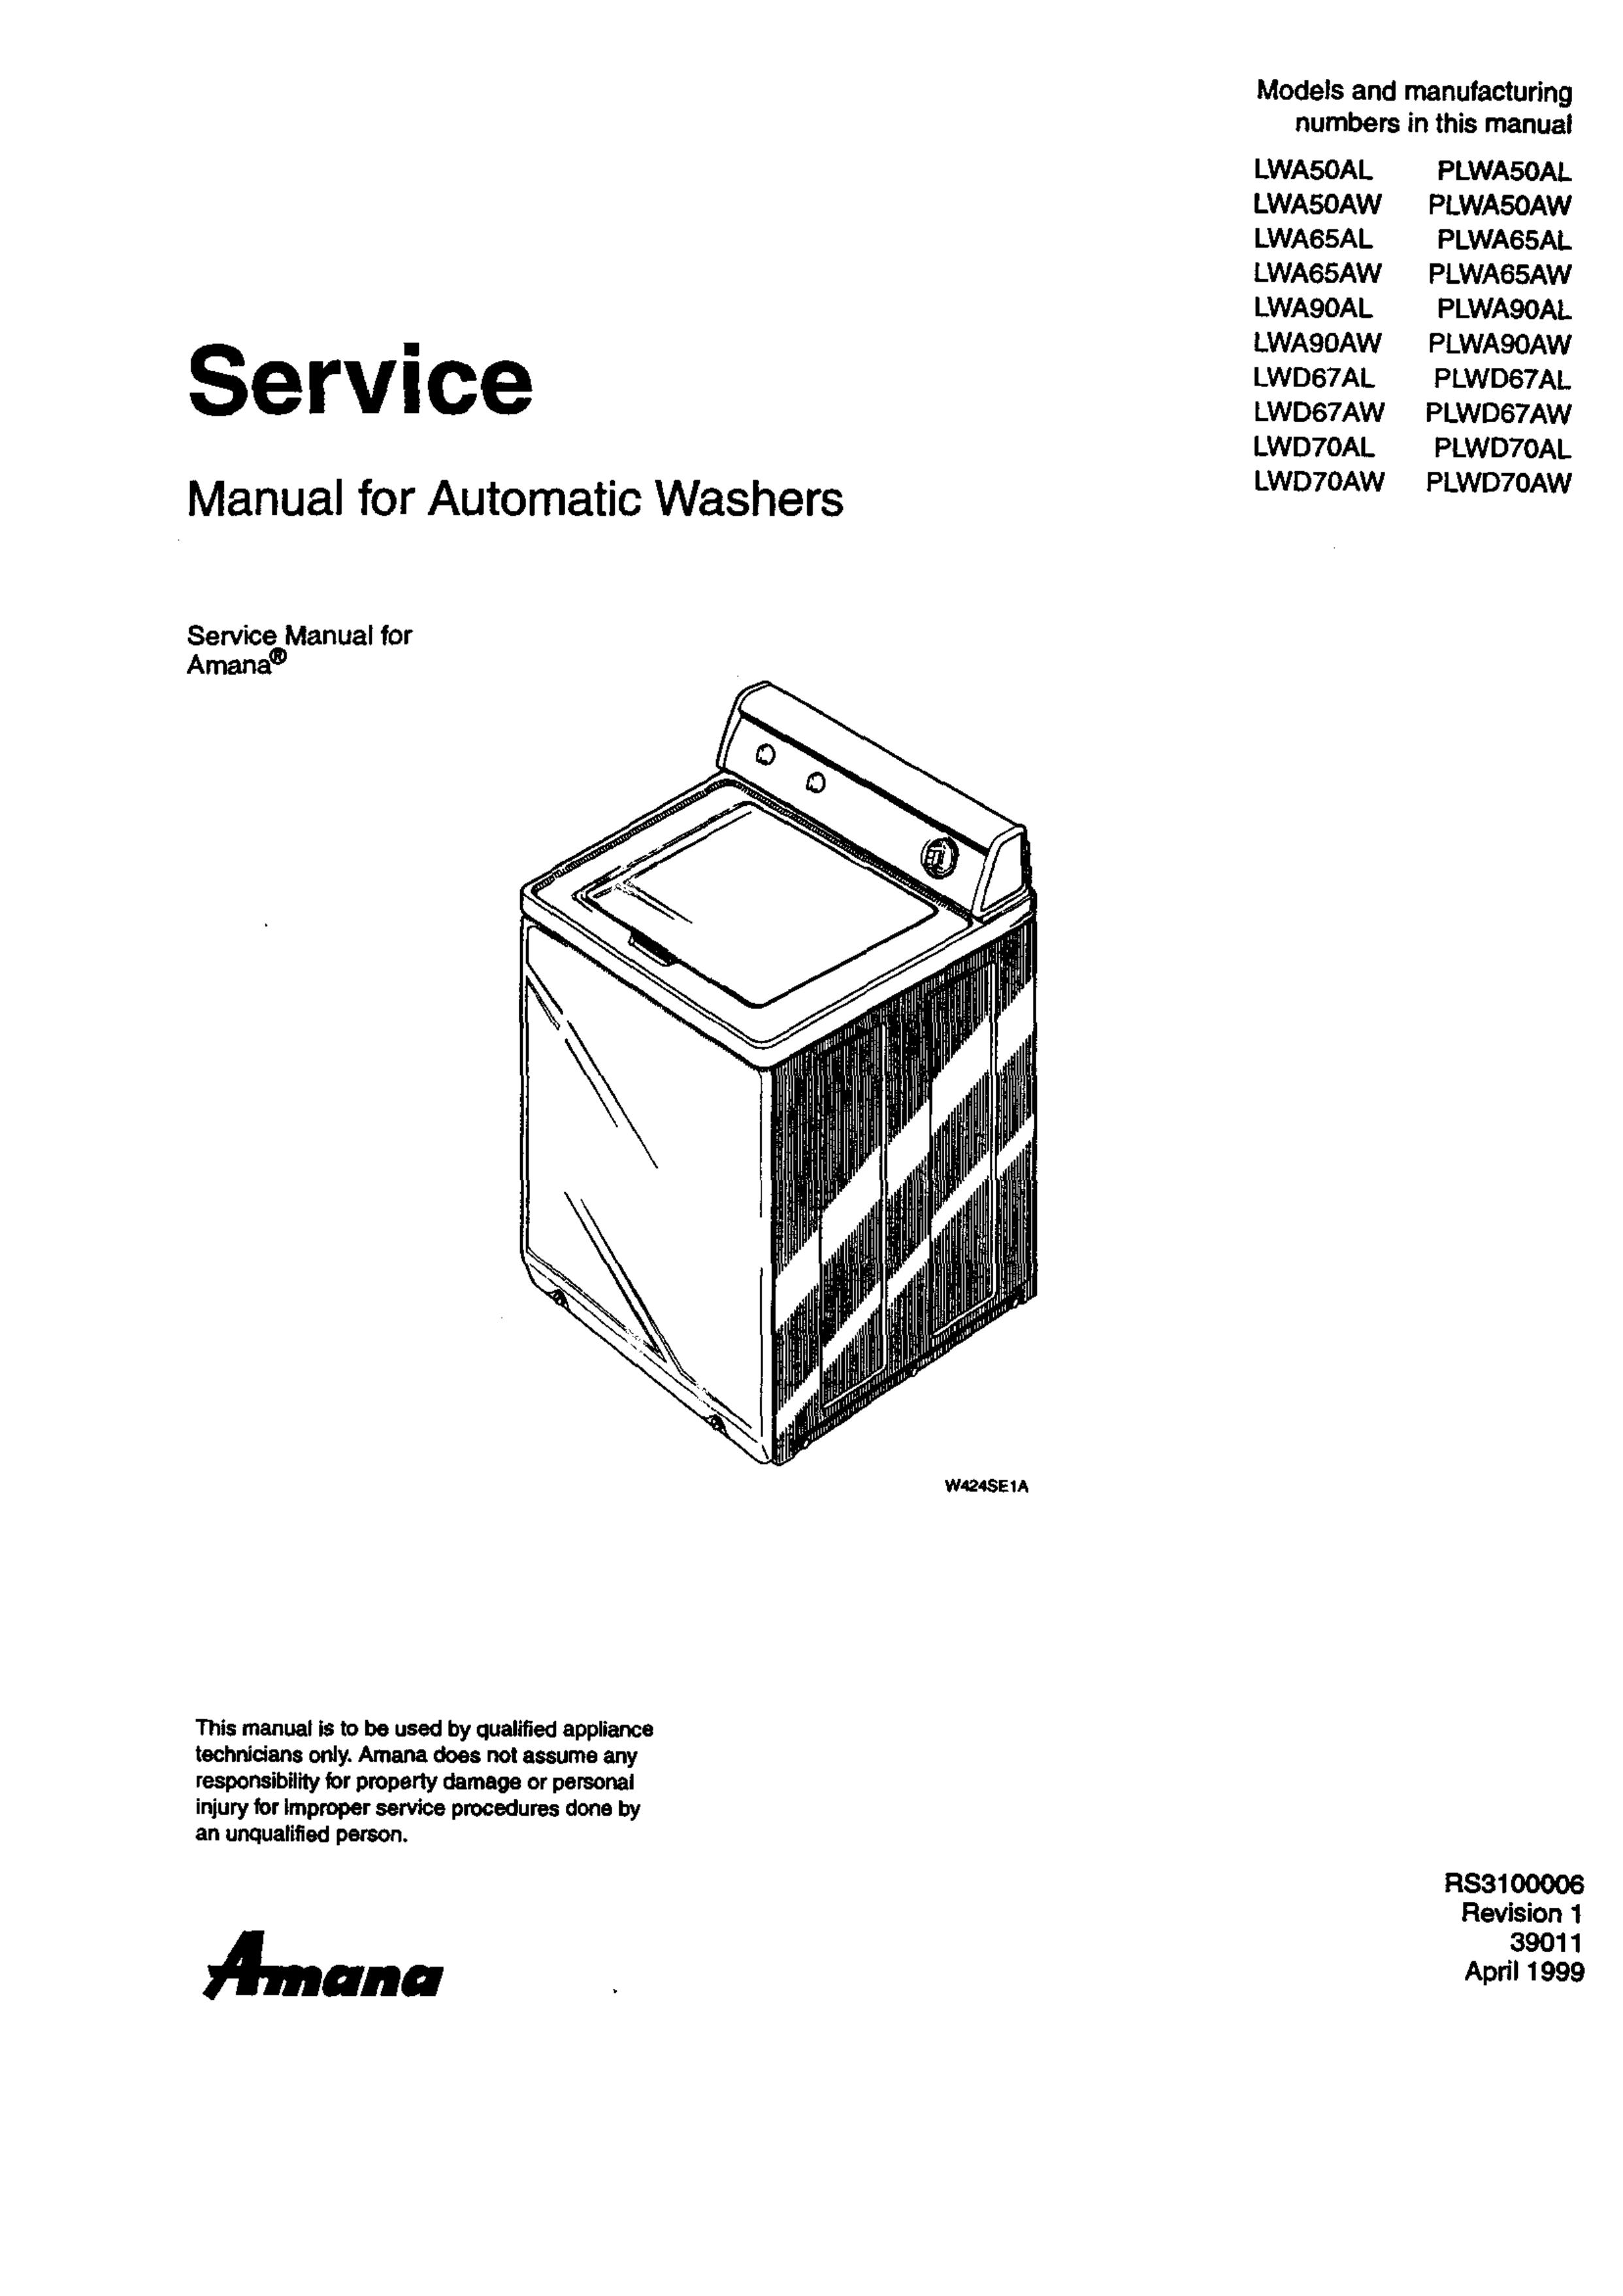 Amana LWD67AL PLWD67AL Washer User Manual